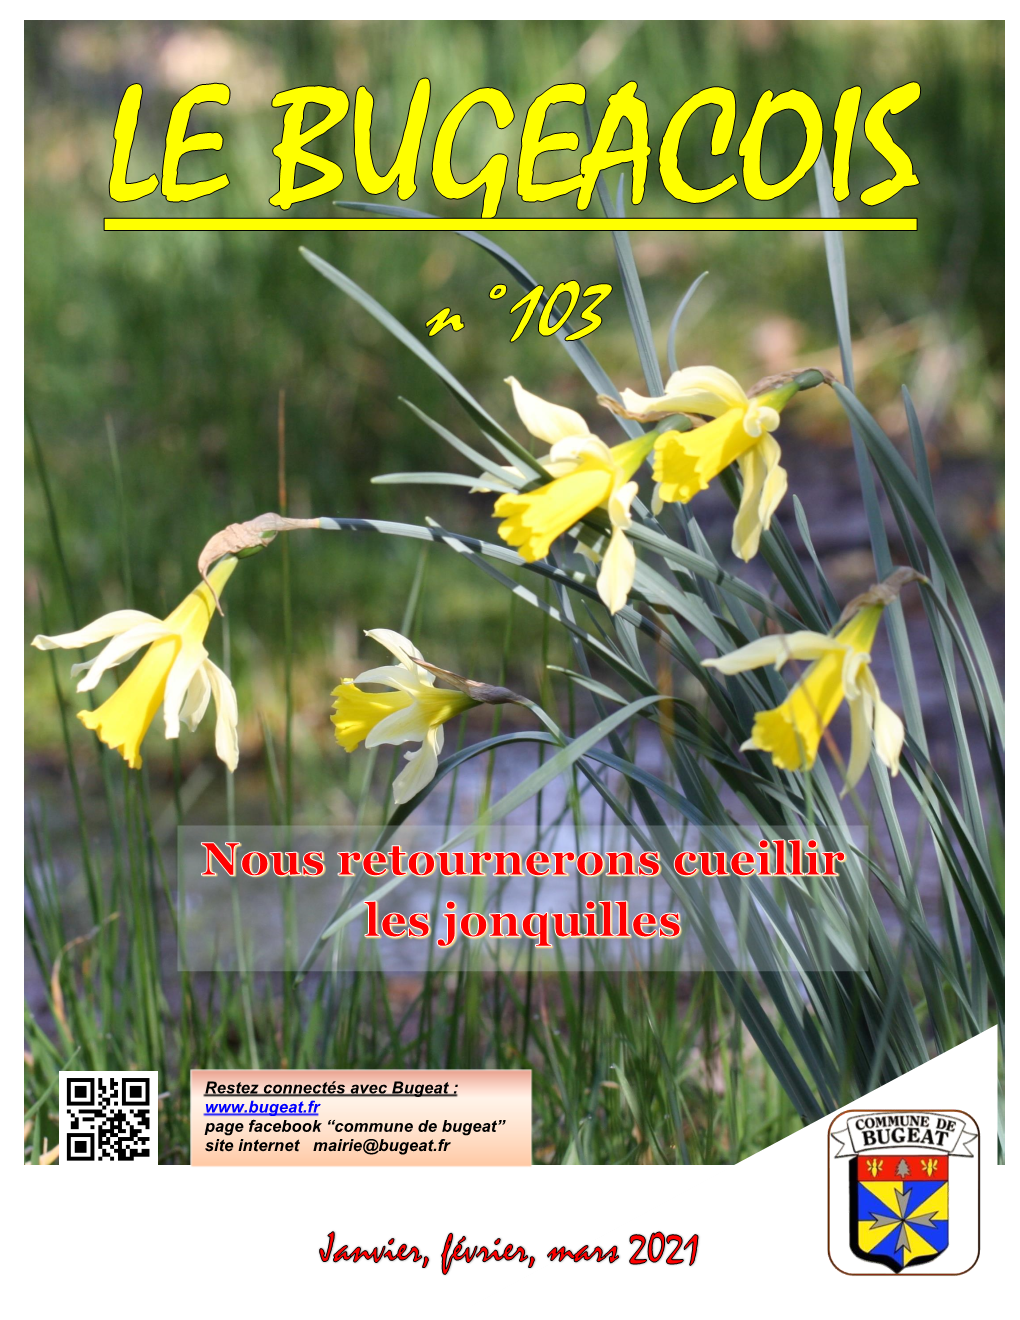 Commune De Bugeat” Site Internet Mairie@Bugeat.Fr